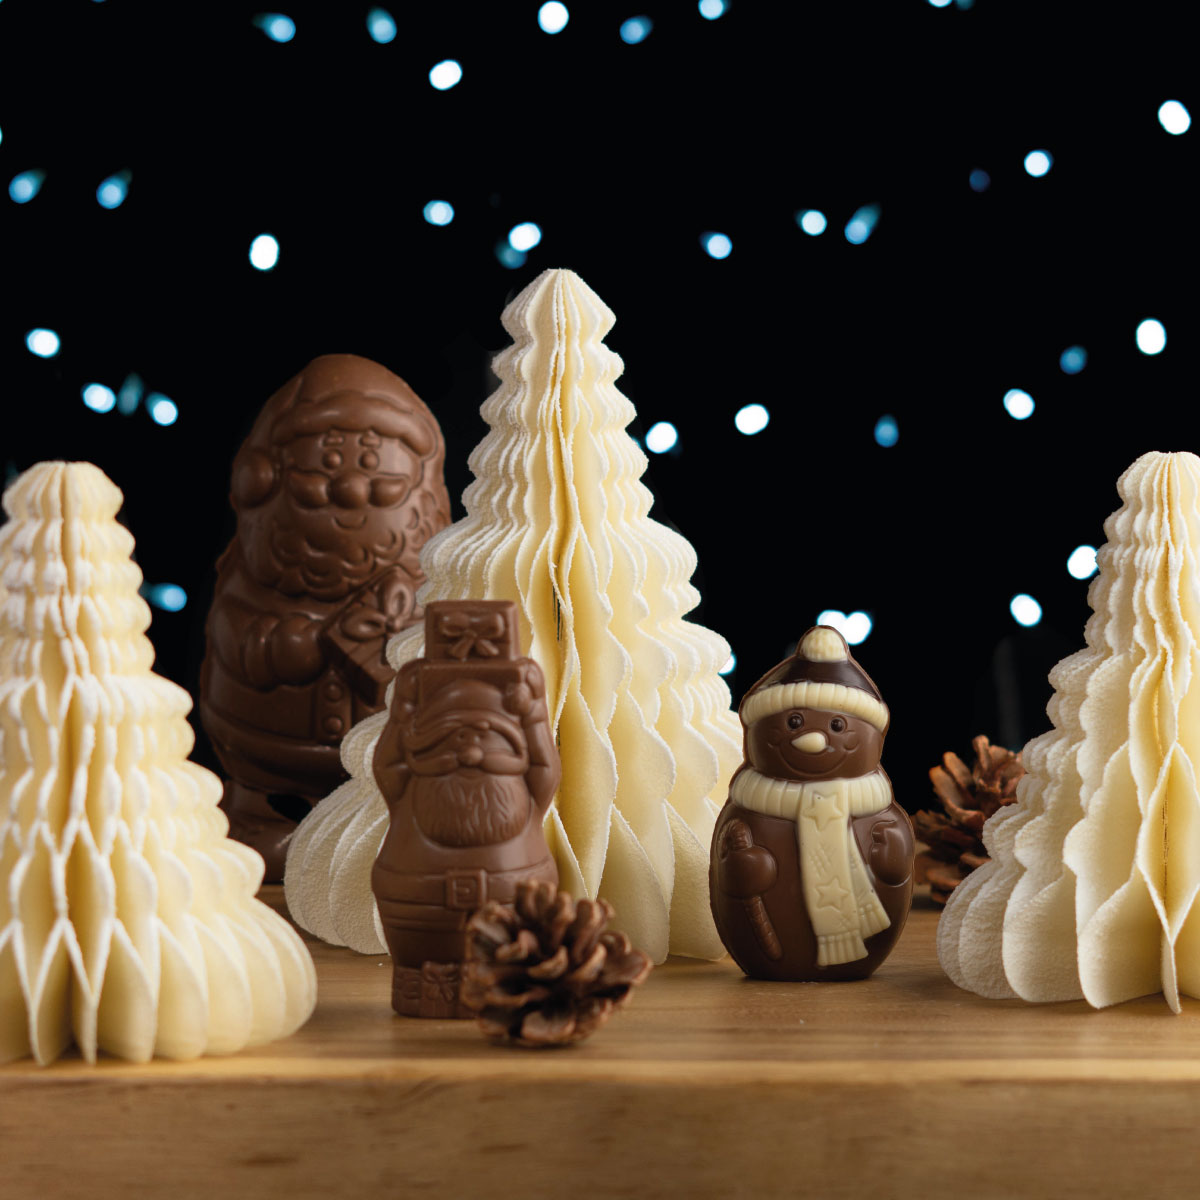 Enchantez Noël avec les idées cadeaux de Réauté Chocolat !